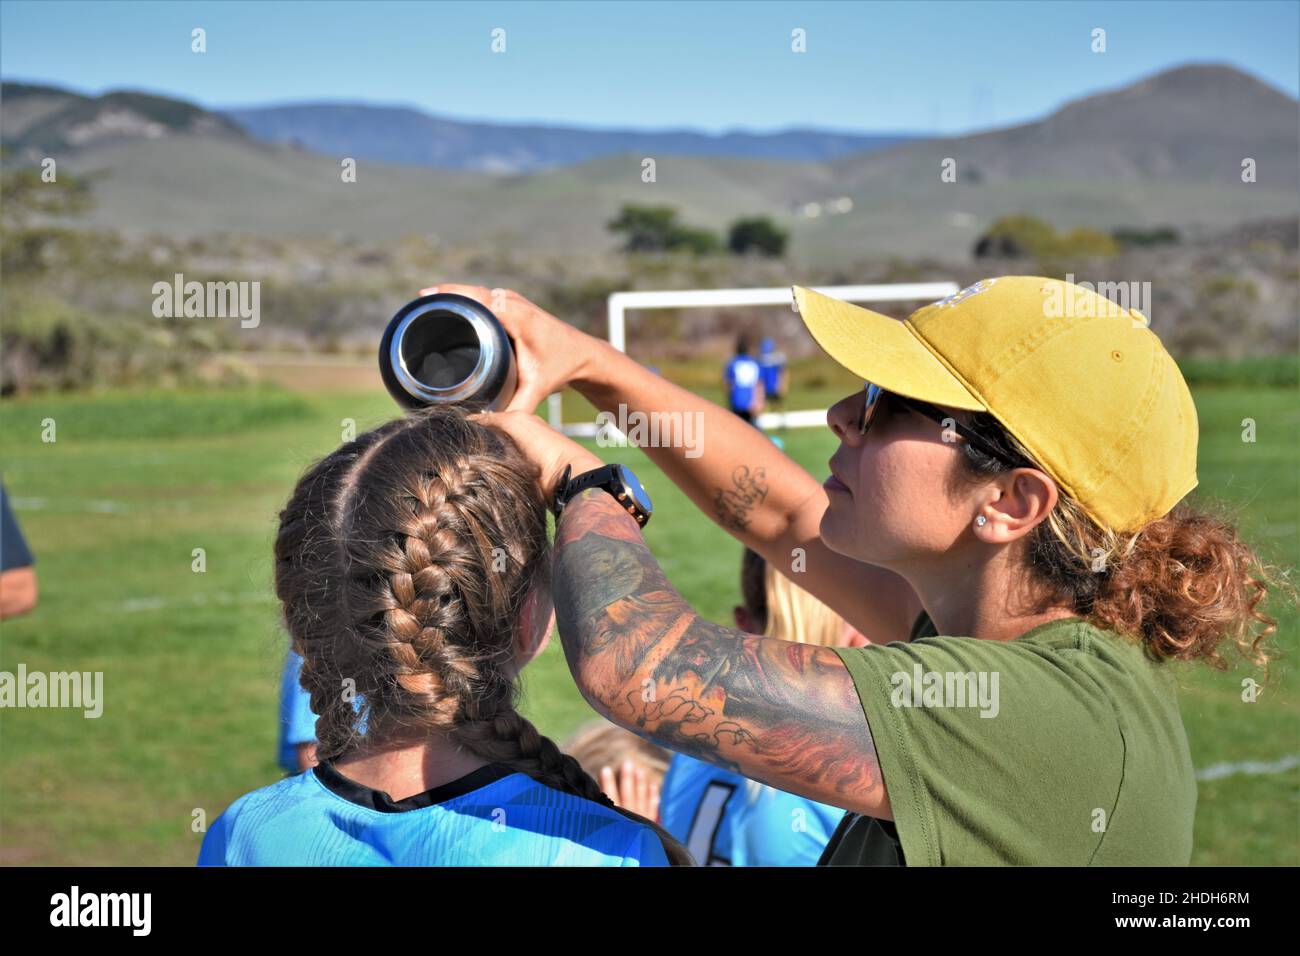 Mamá refrescándose de su chica en la mitad de un partido de fútbol de 14 años de edad en el calor de 95 grados del sur de California con trenzas y tatuajes, gorra Foto de stock